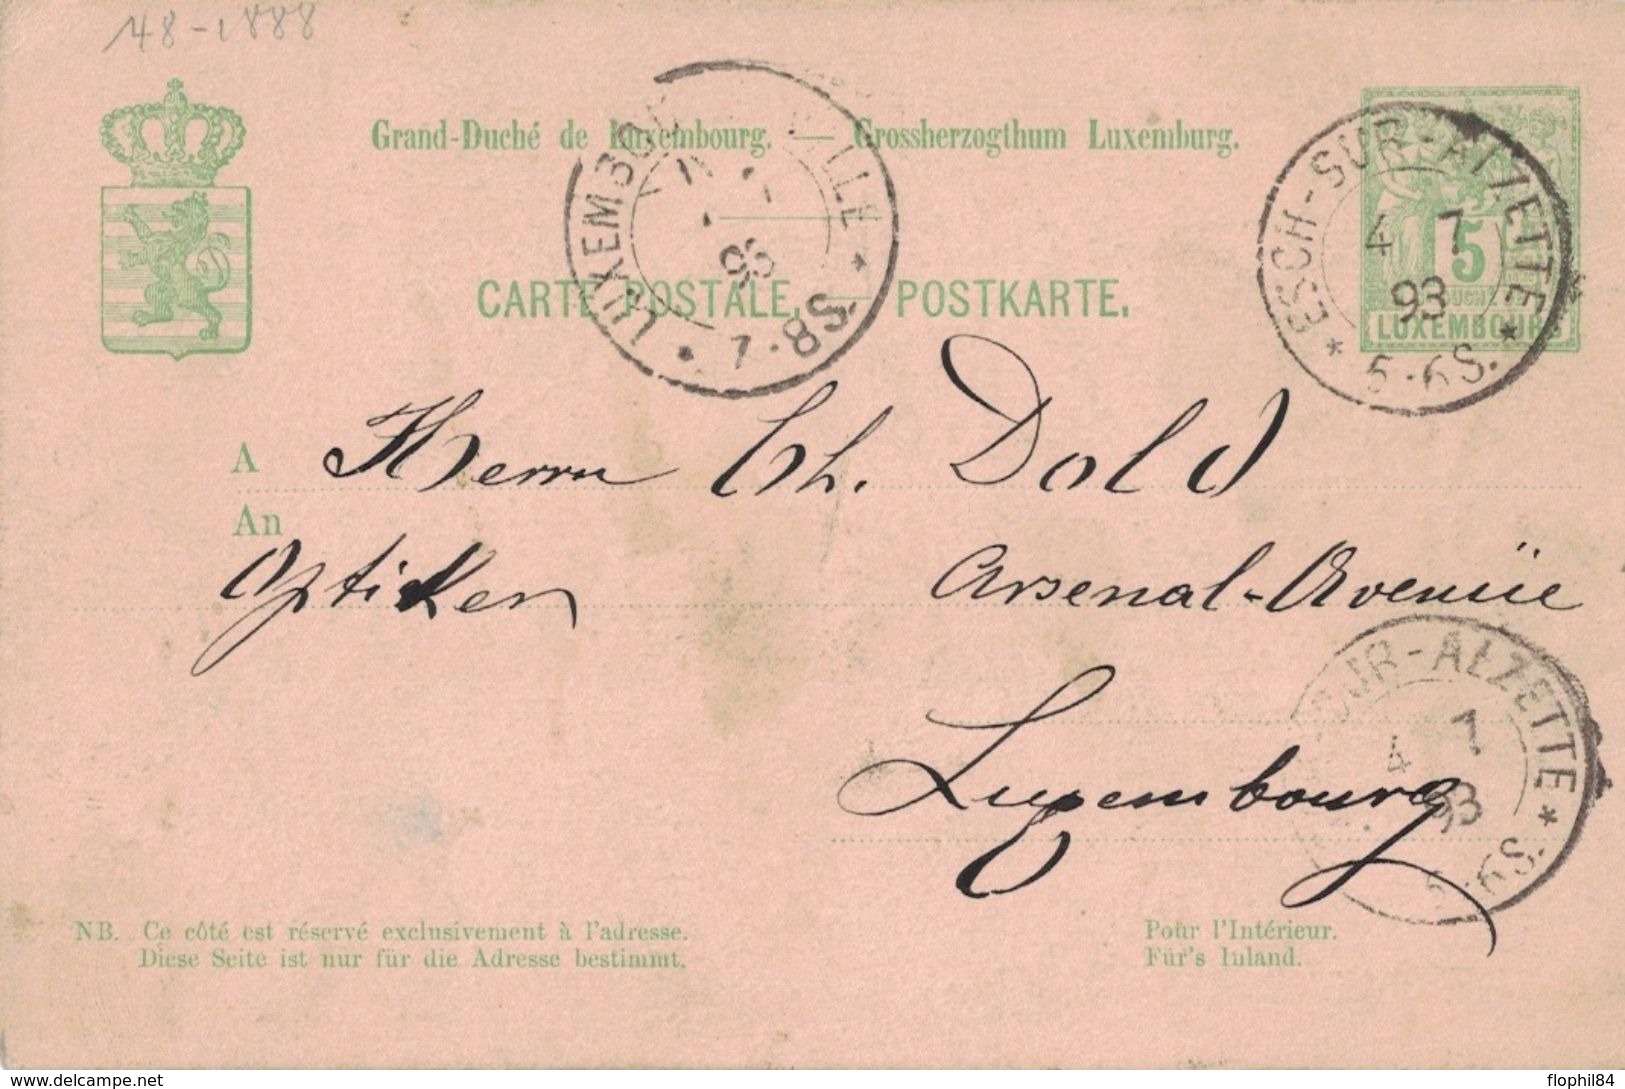 LUXEMBOURG - ENTIER POSTAL - ESCH-SUR-ALZETTE - 4-7-1893 (P1) - Interi Postali